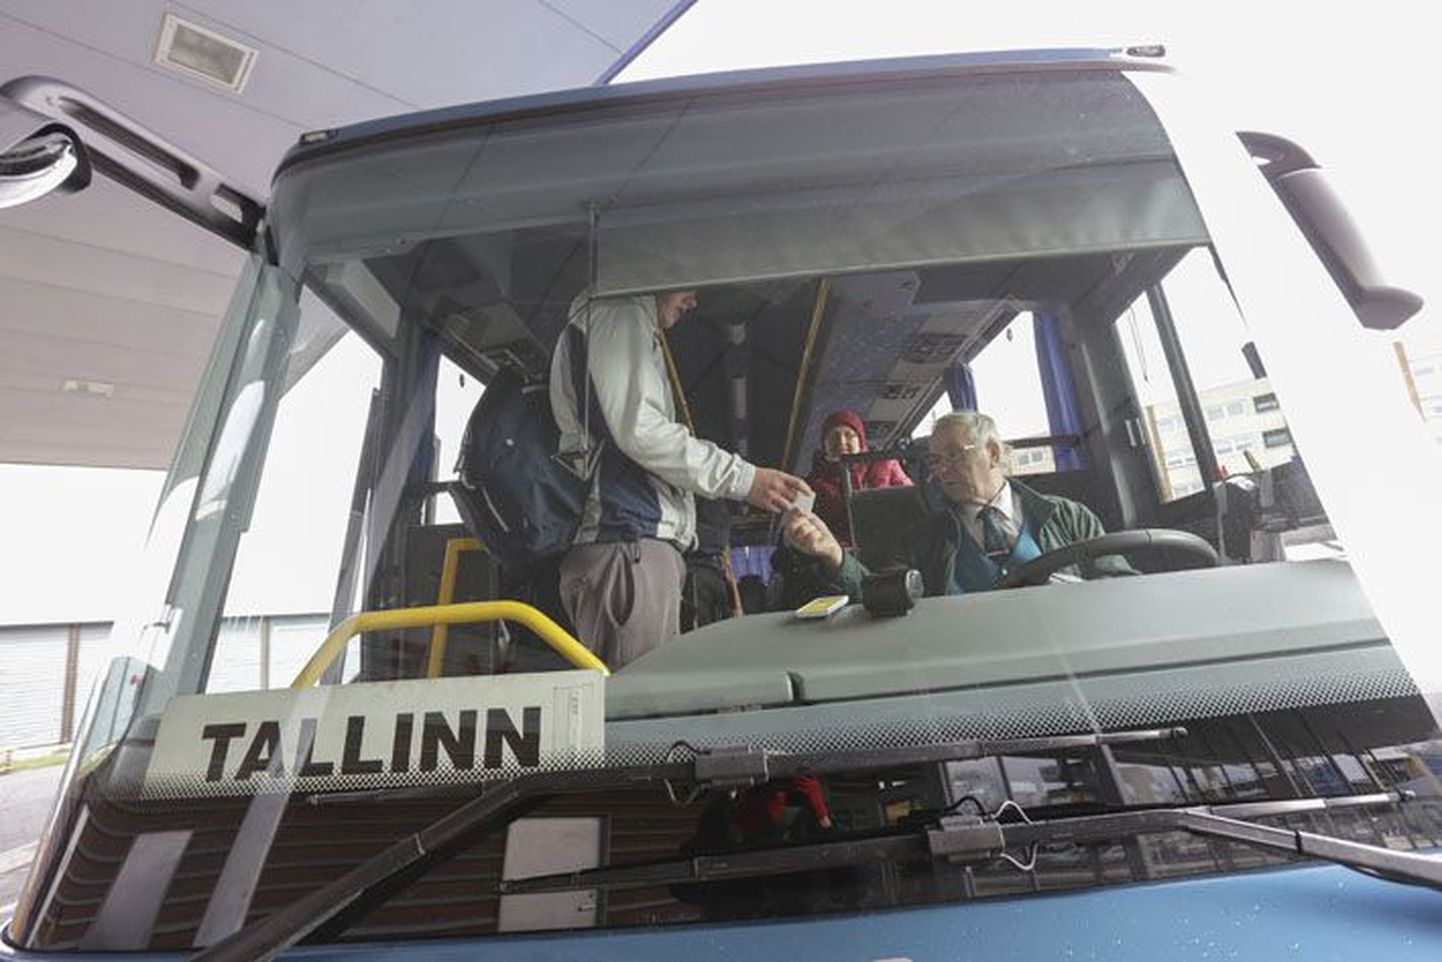 Odavaim täispilet Rakverest Tallinna maksab 3.50, aga sõita saab ka bussiga, mille pilet on pea poole kallim.